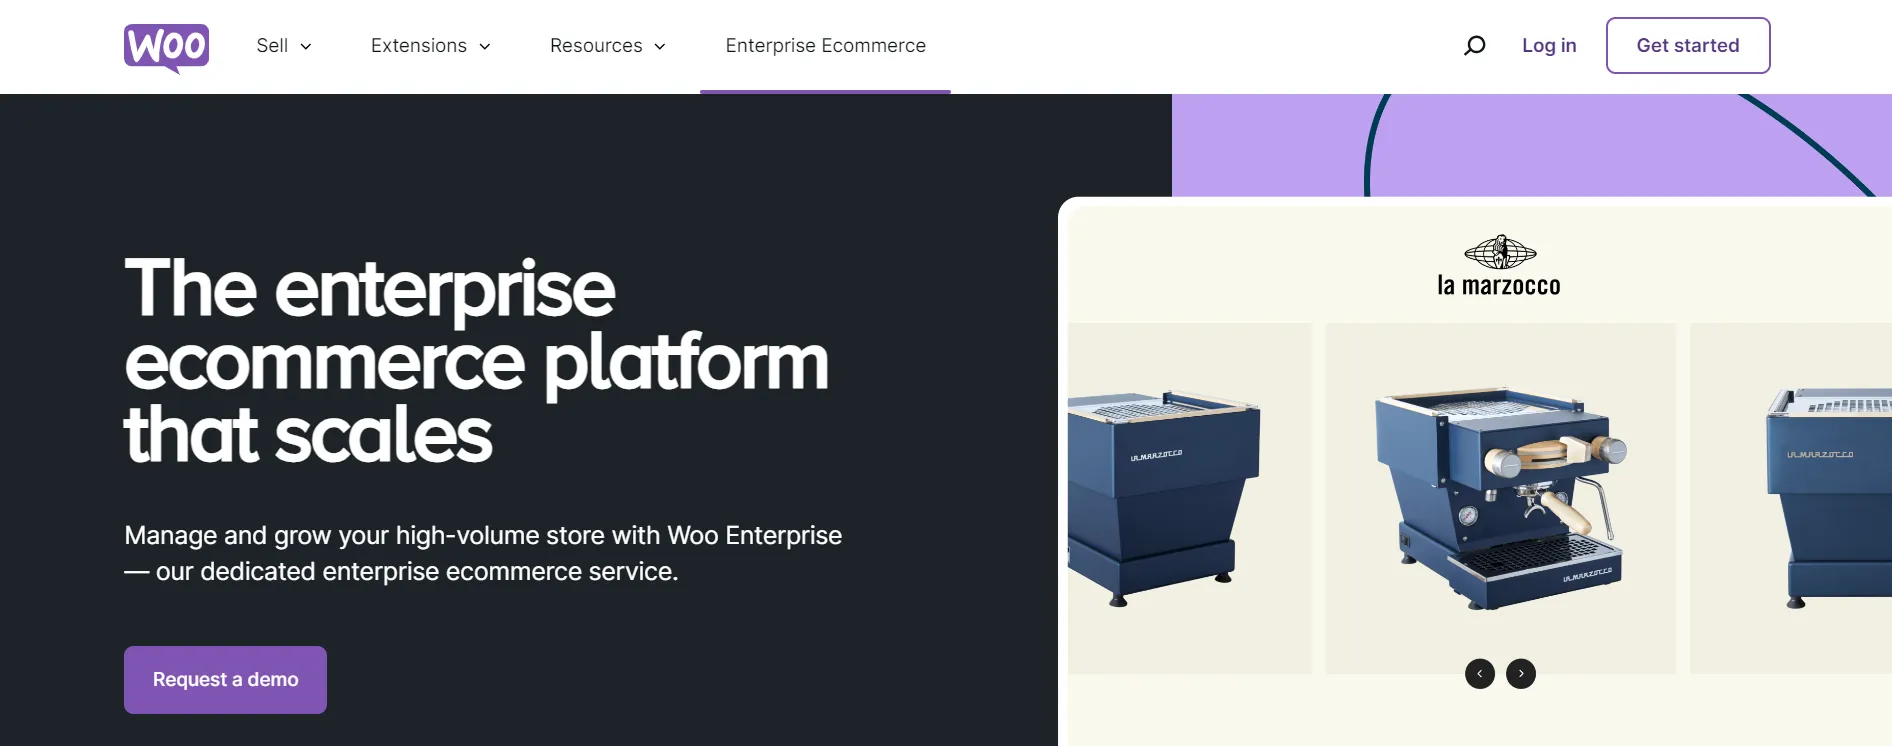 Woo for Enterprise homepage